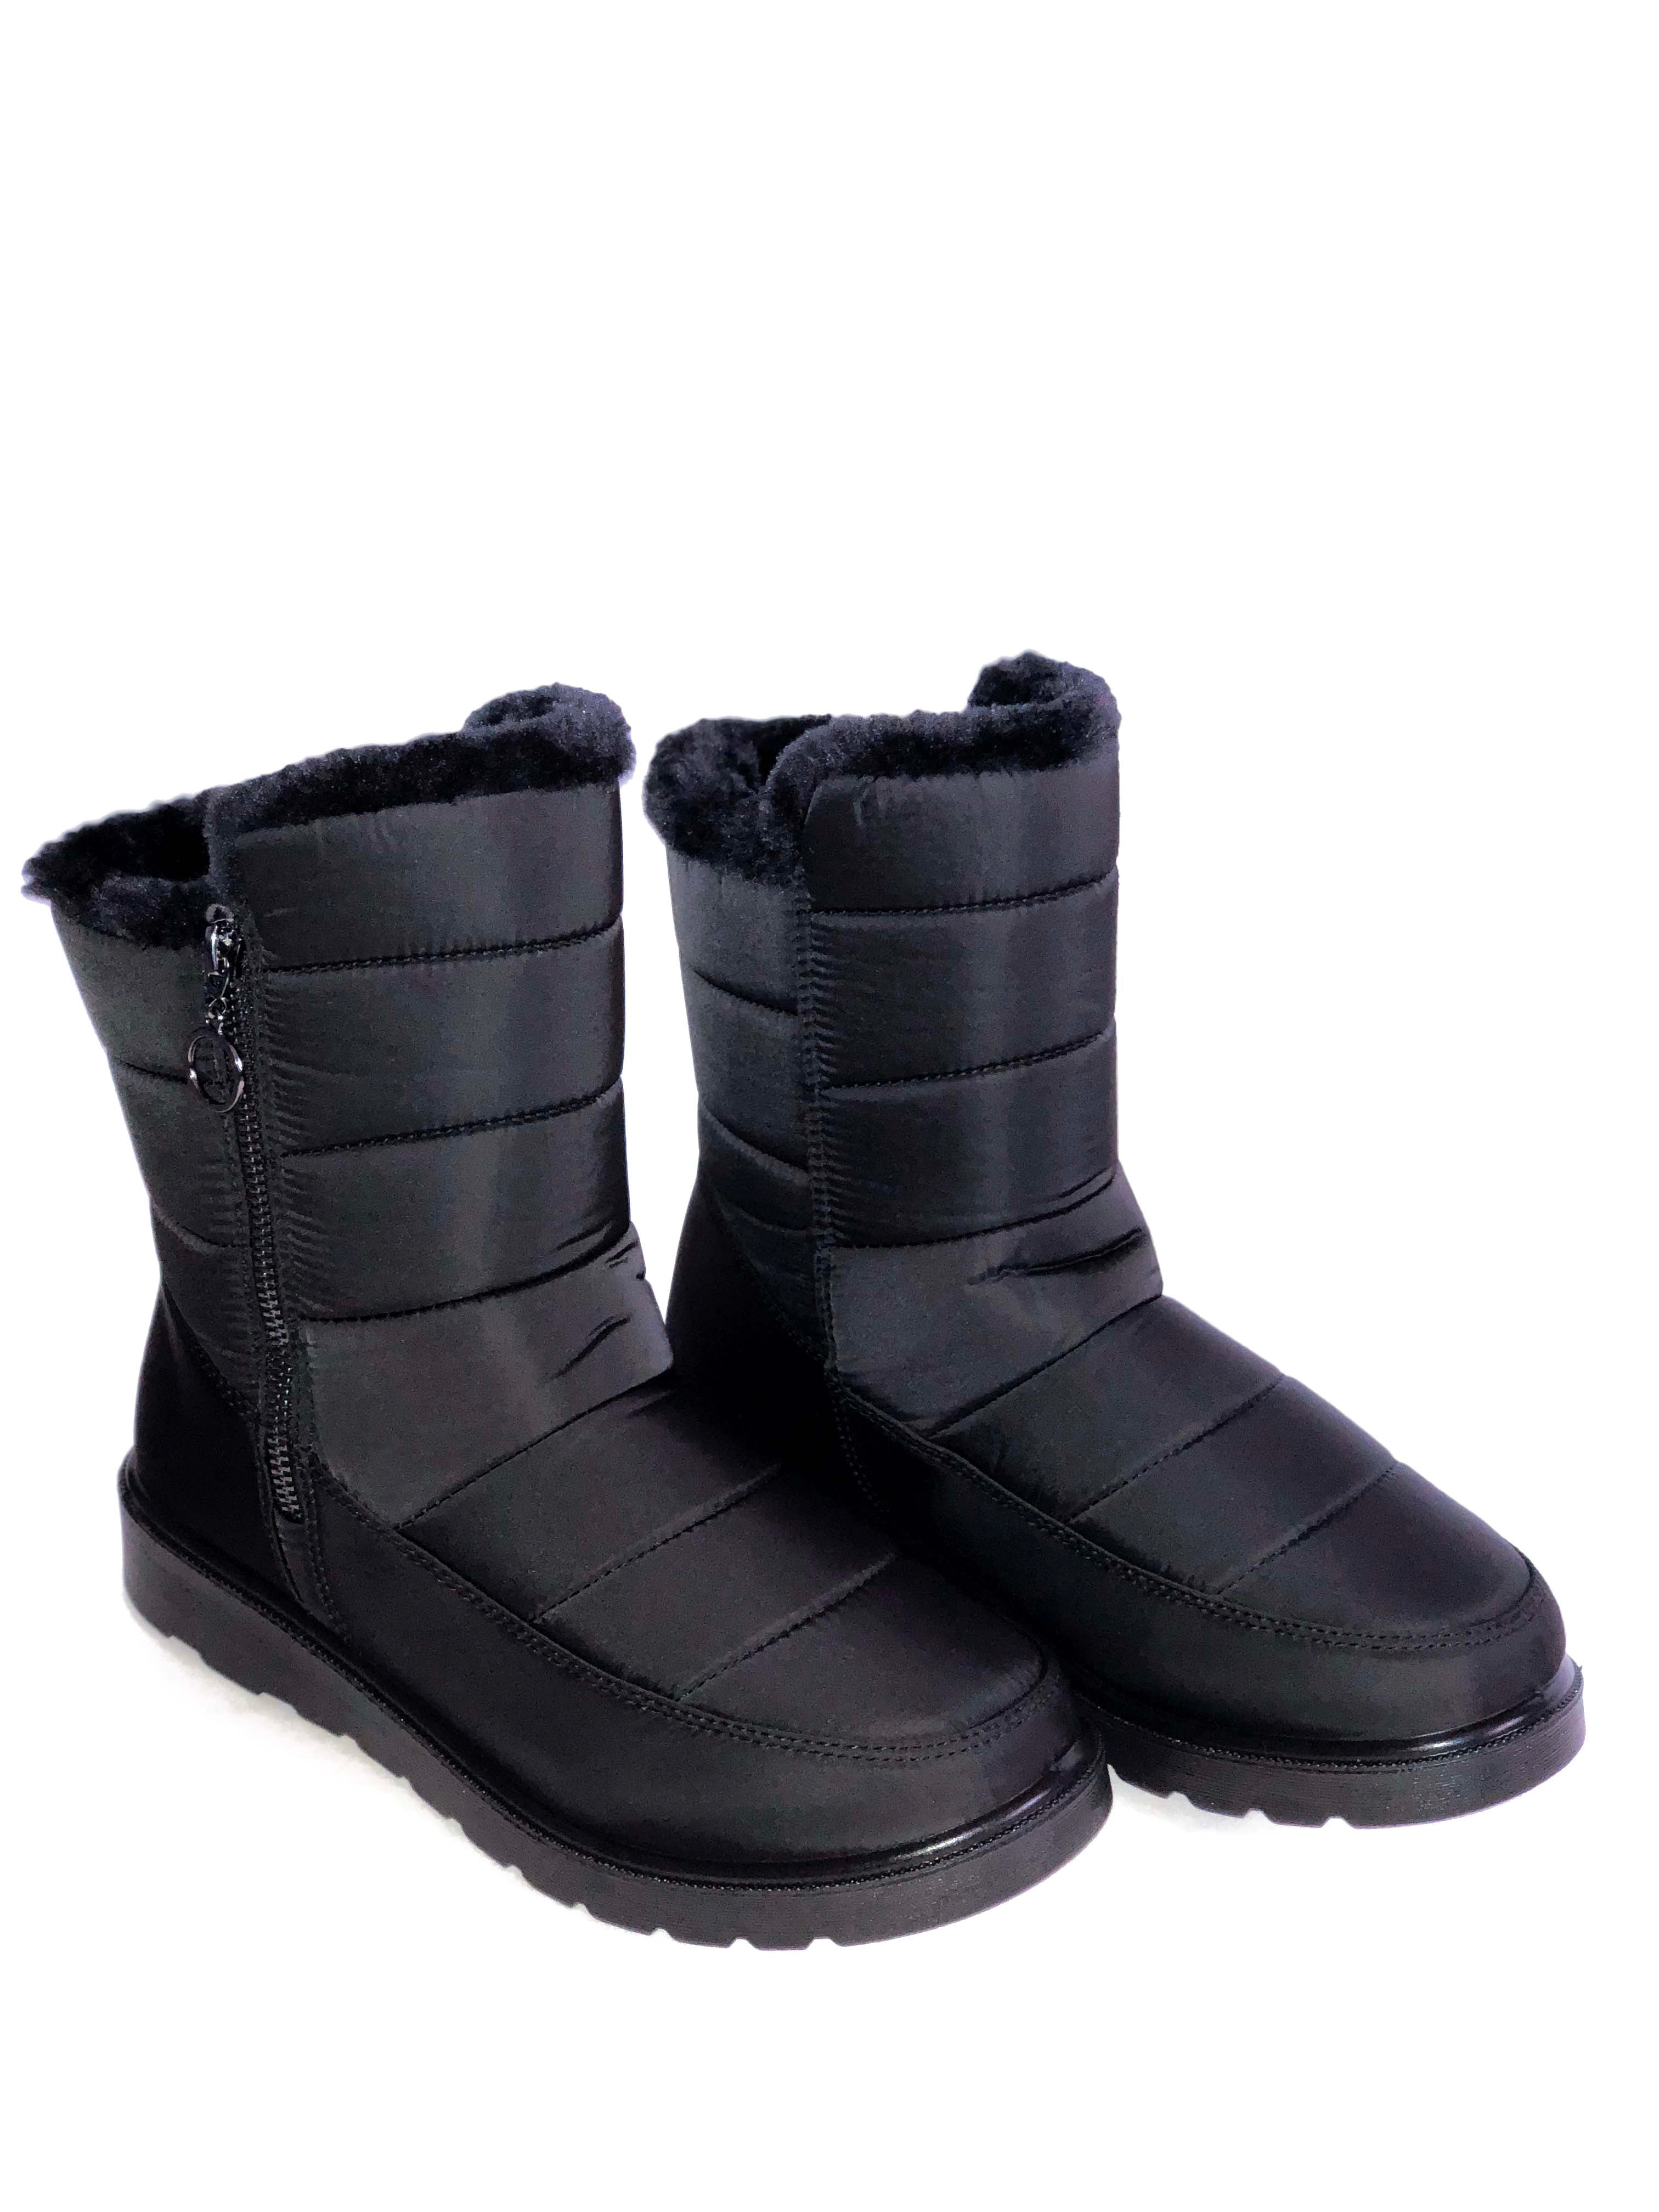 Botin negro de nieve Coleen 99 - Black Ankle Boot Coleen 99